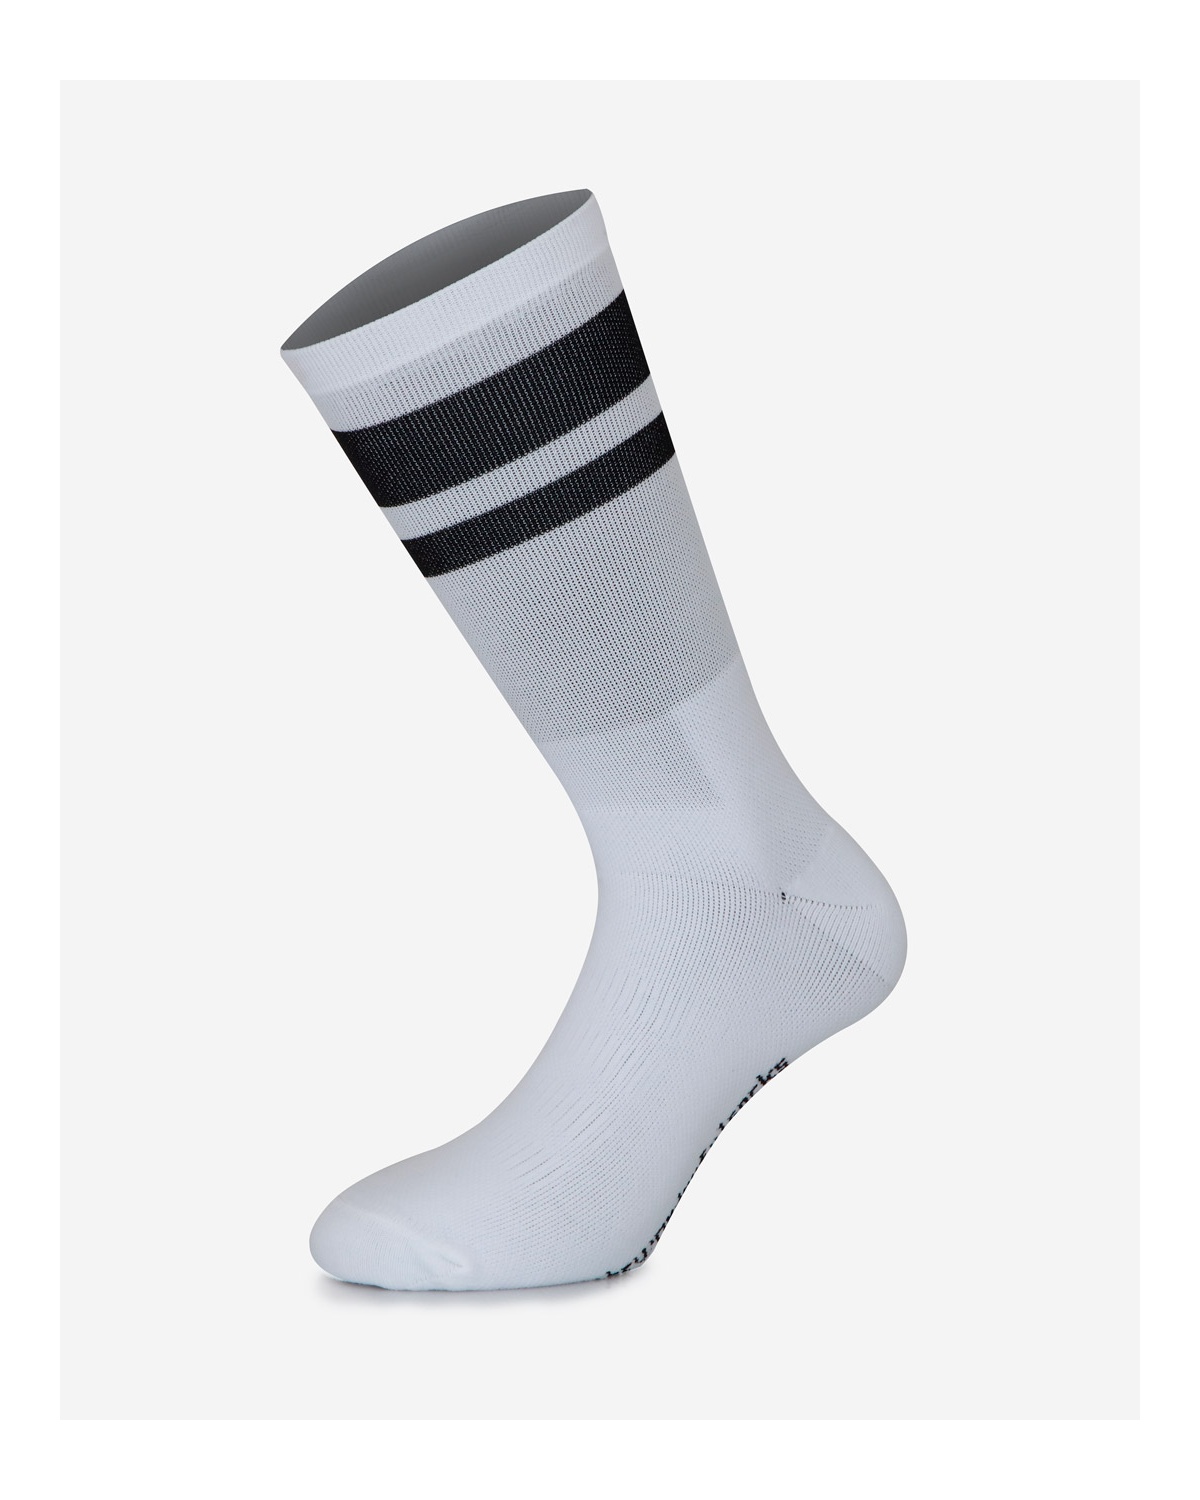 The Wonderful Socks Radsocken schwarz/weiß